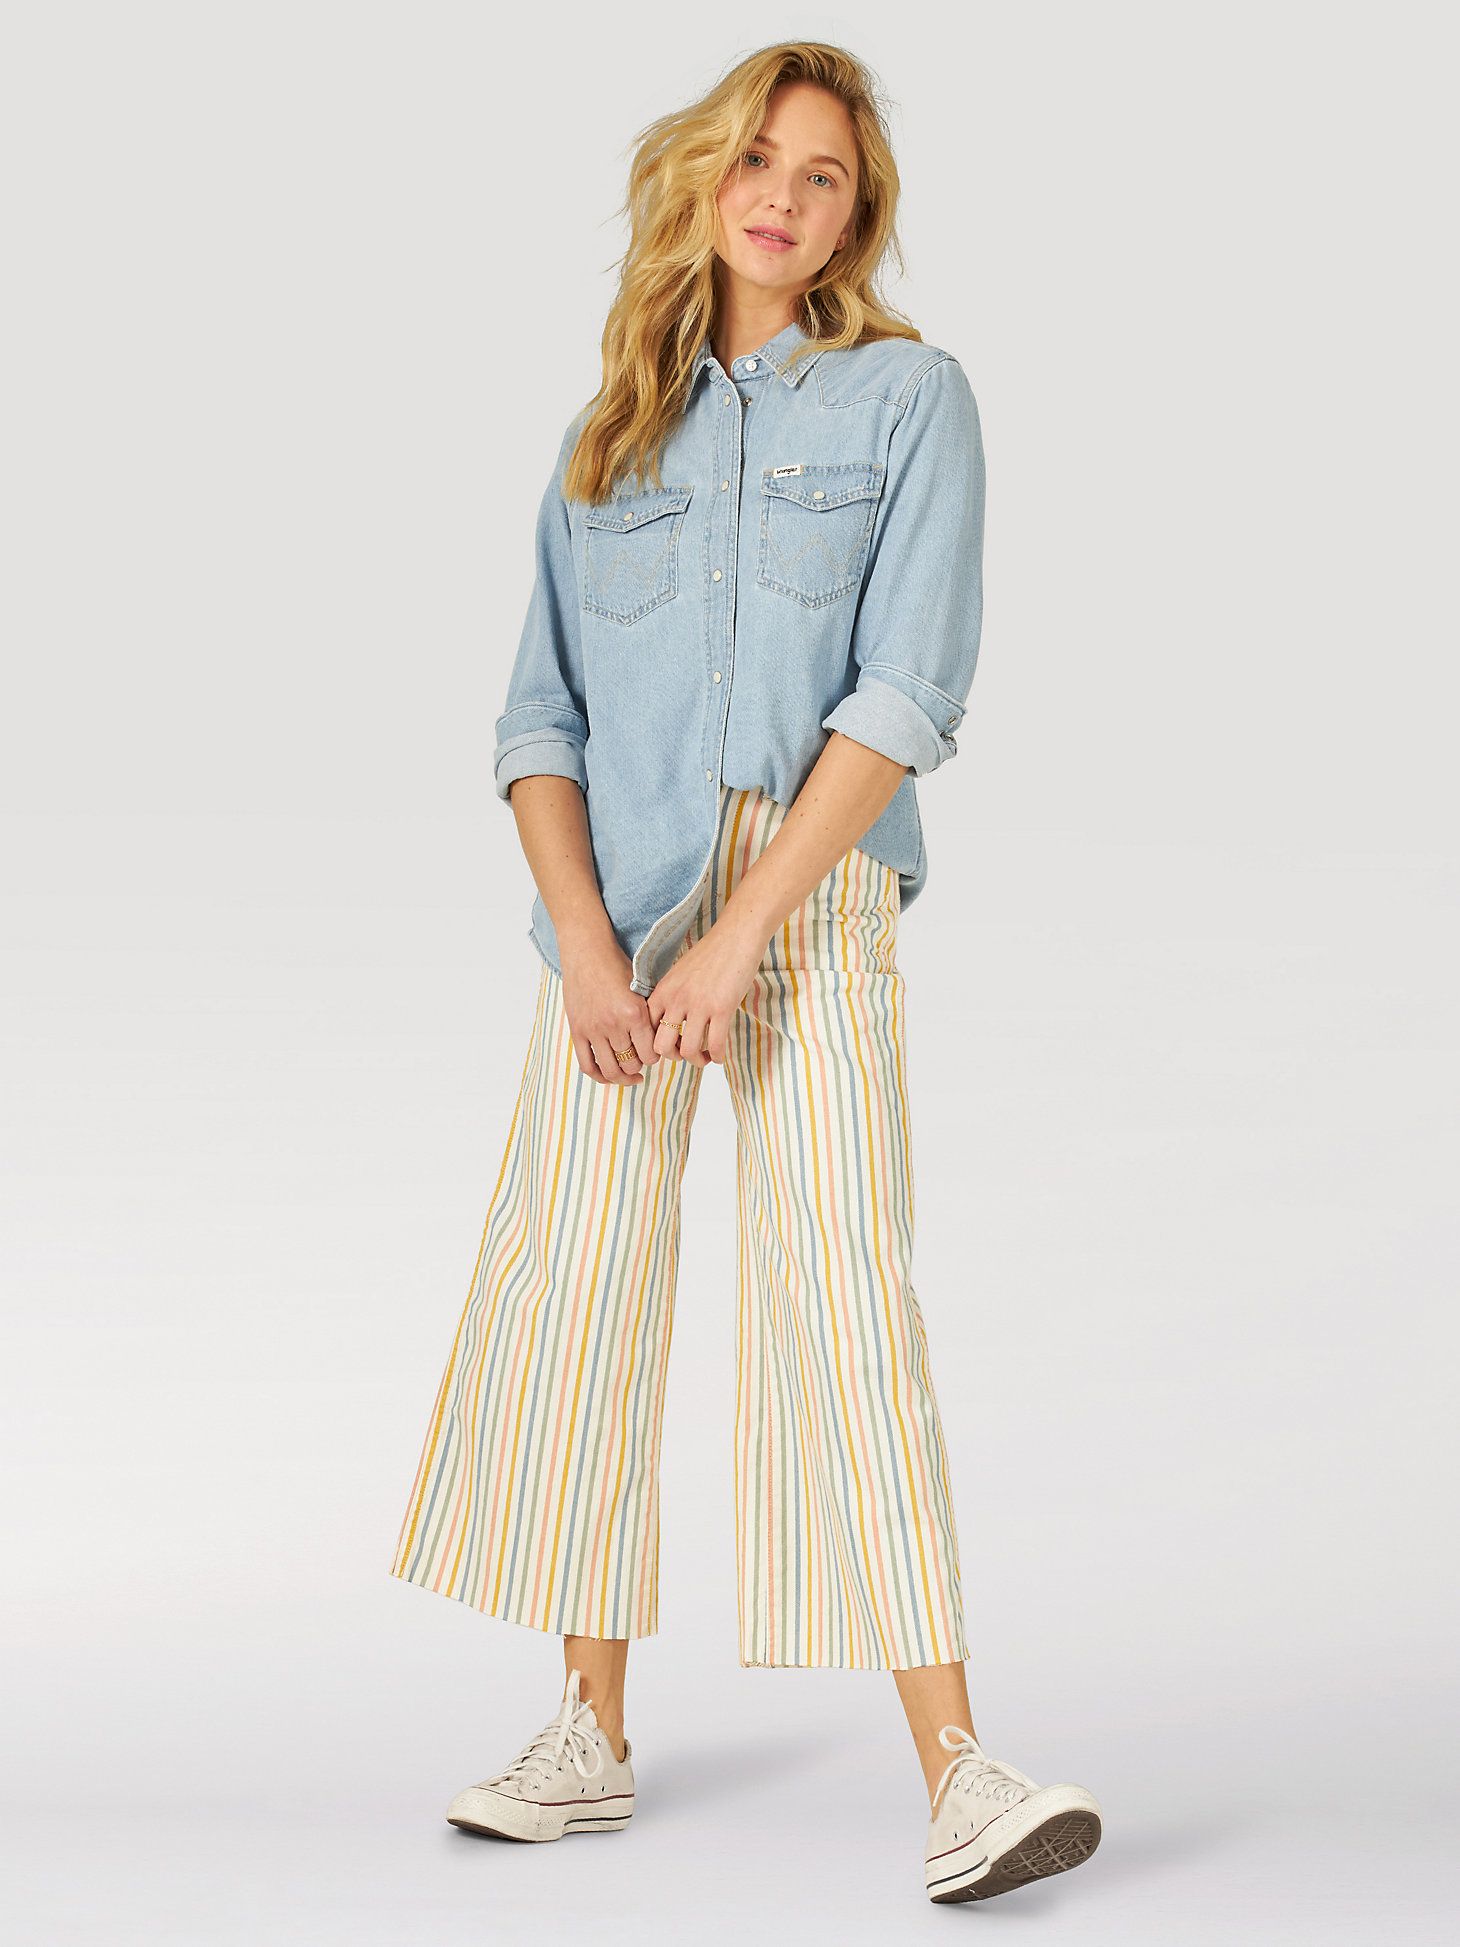 Women's Worldwide 662 Crop Stripe Jean in Rainbow Stripe alternative view 6